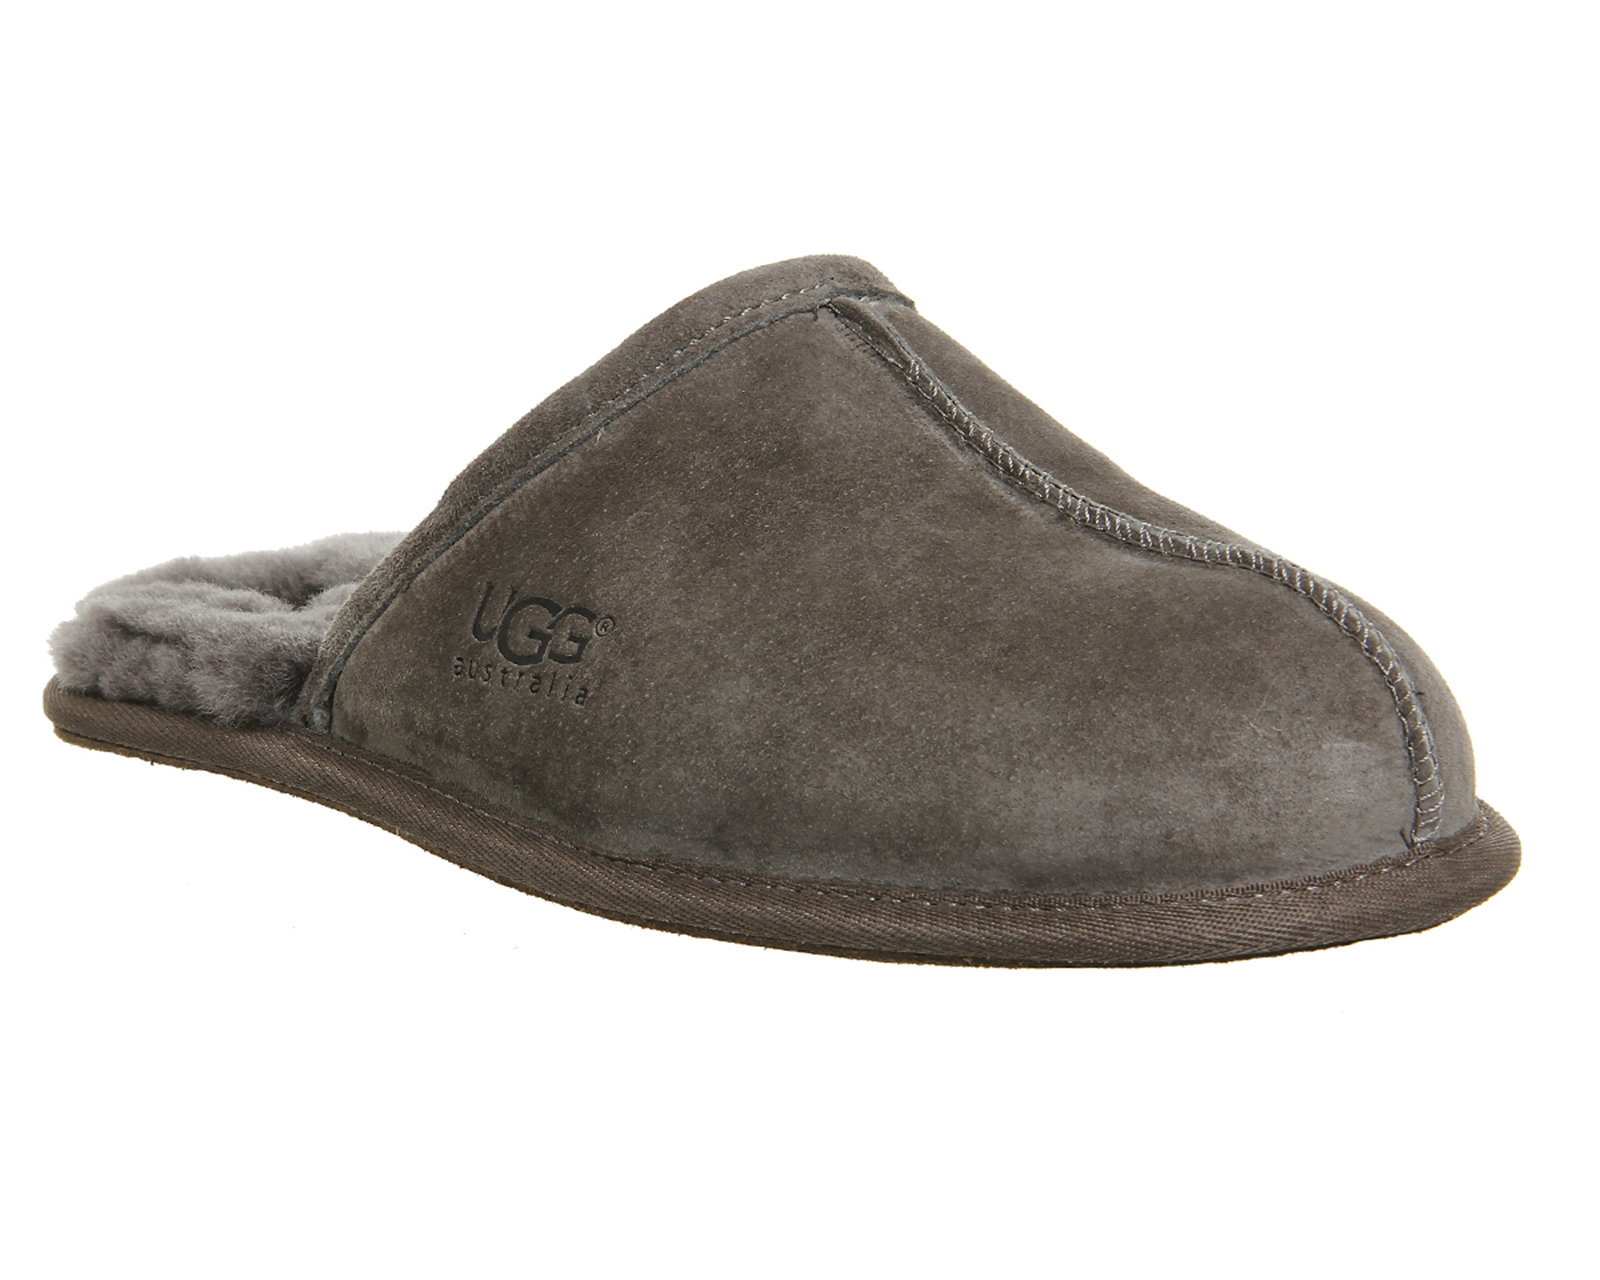 Buy > gray ugg slippers mens > in stock